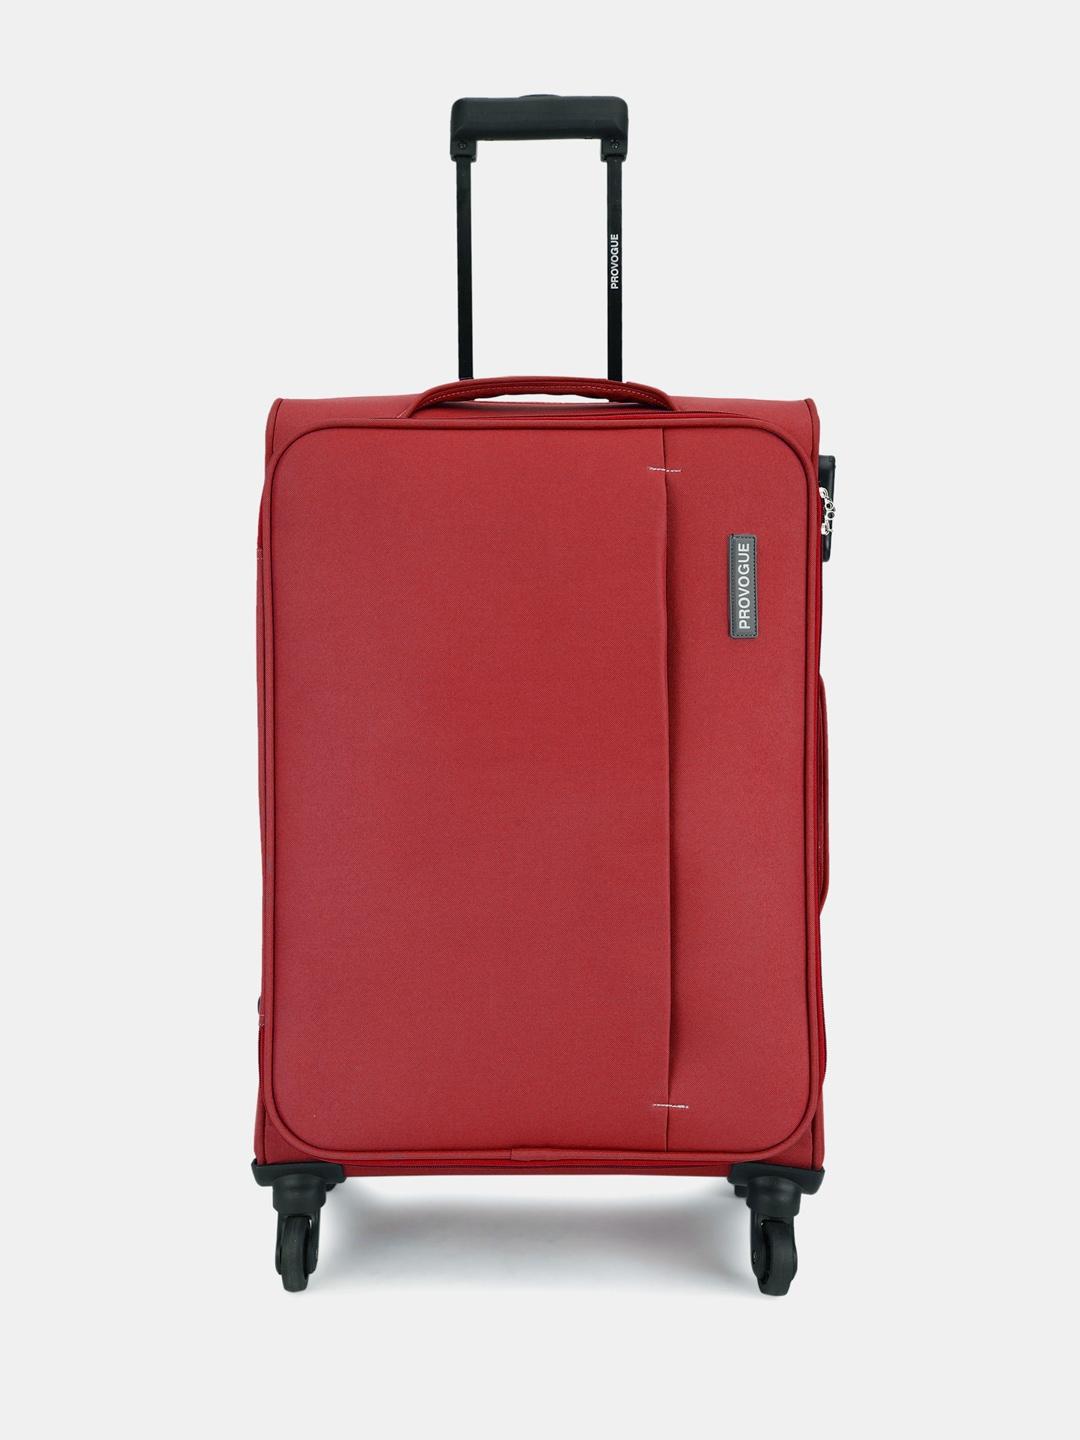 provogue-unisex-large-trolley-suitcase